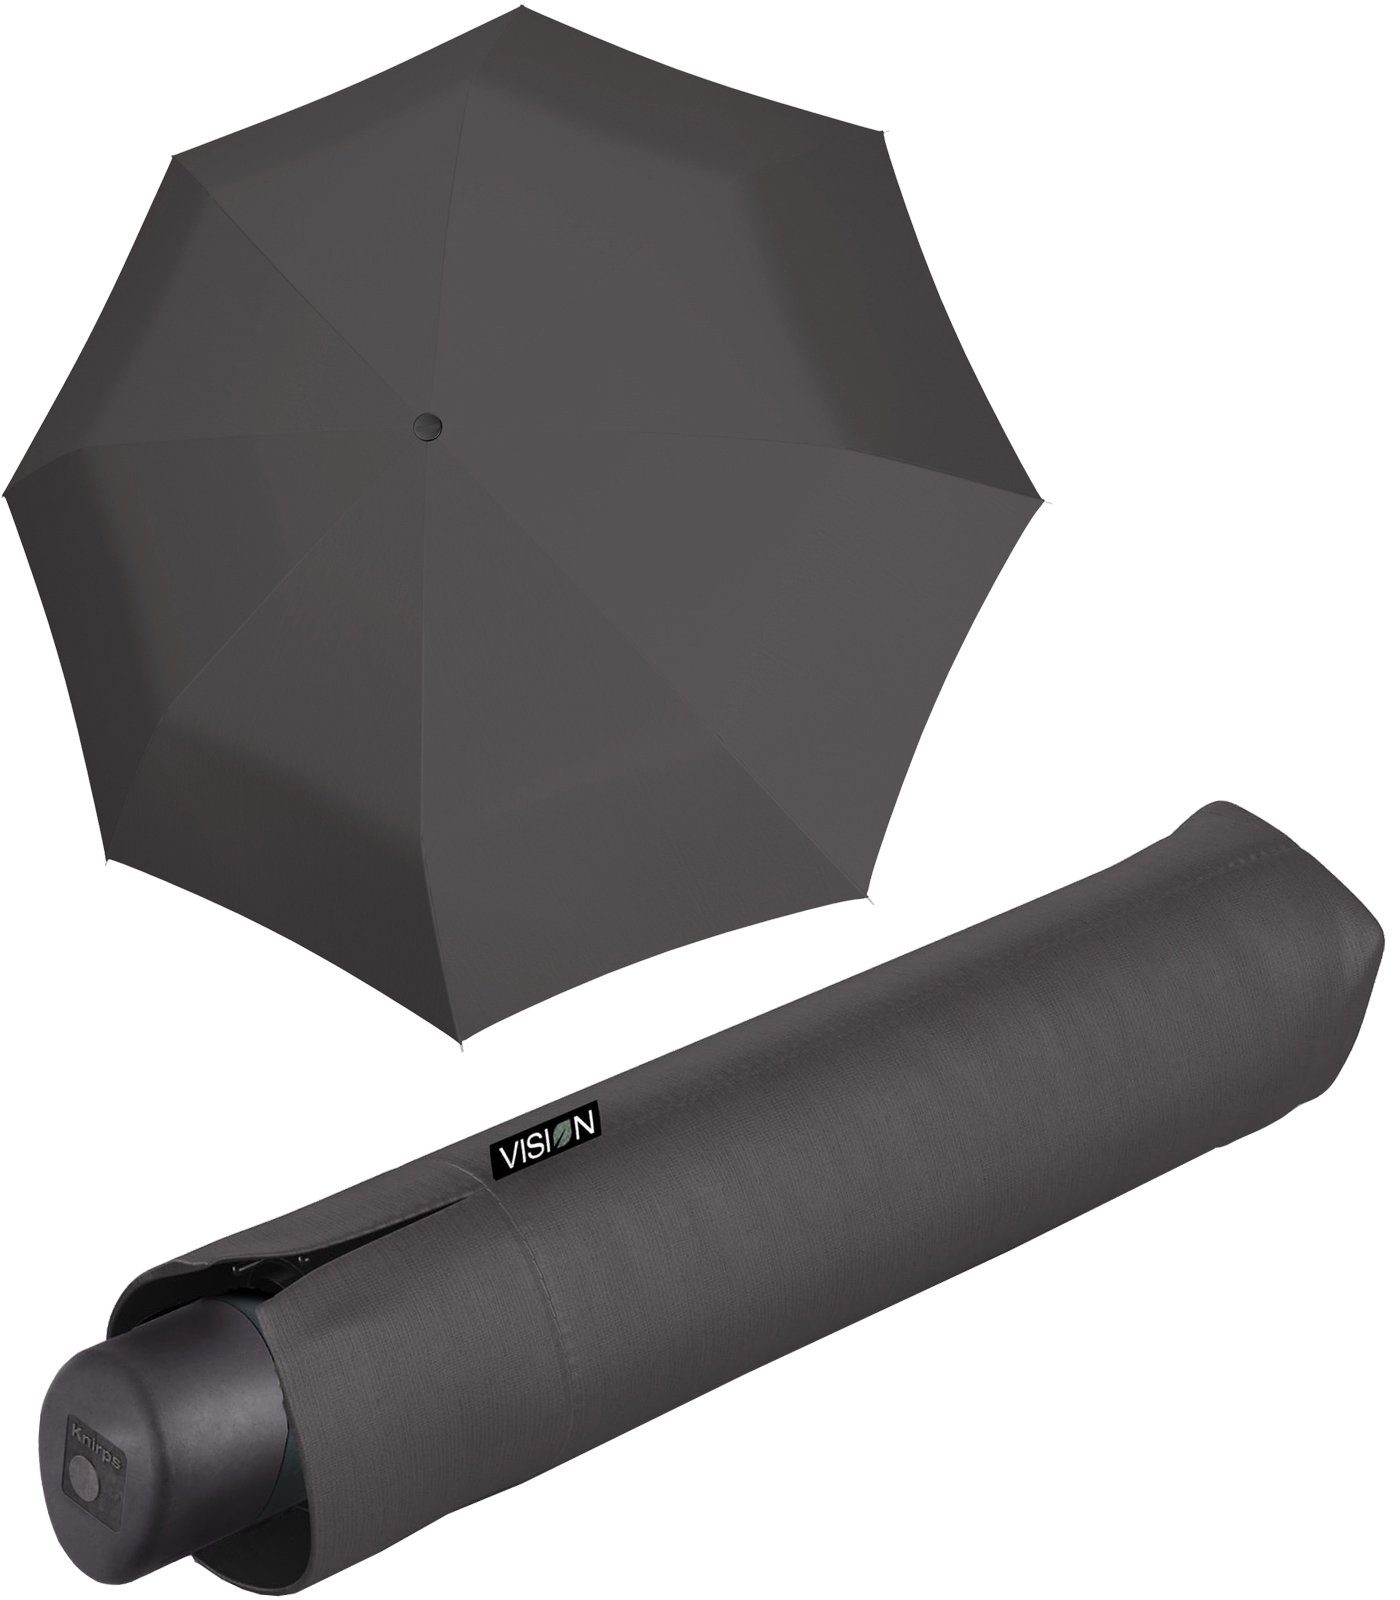 Knirps® Taschenregenschirm Vision Manual - nachhaltiger Damen-Regenschirm,  recyceltes PET, PFC-frei beschichtet - dust